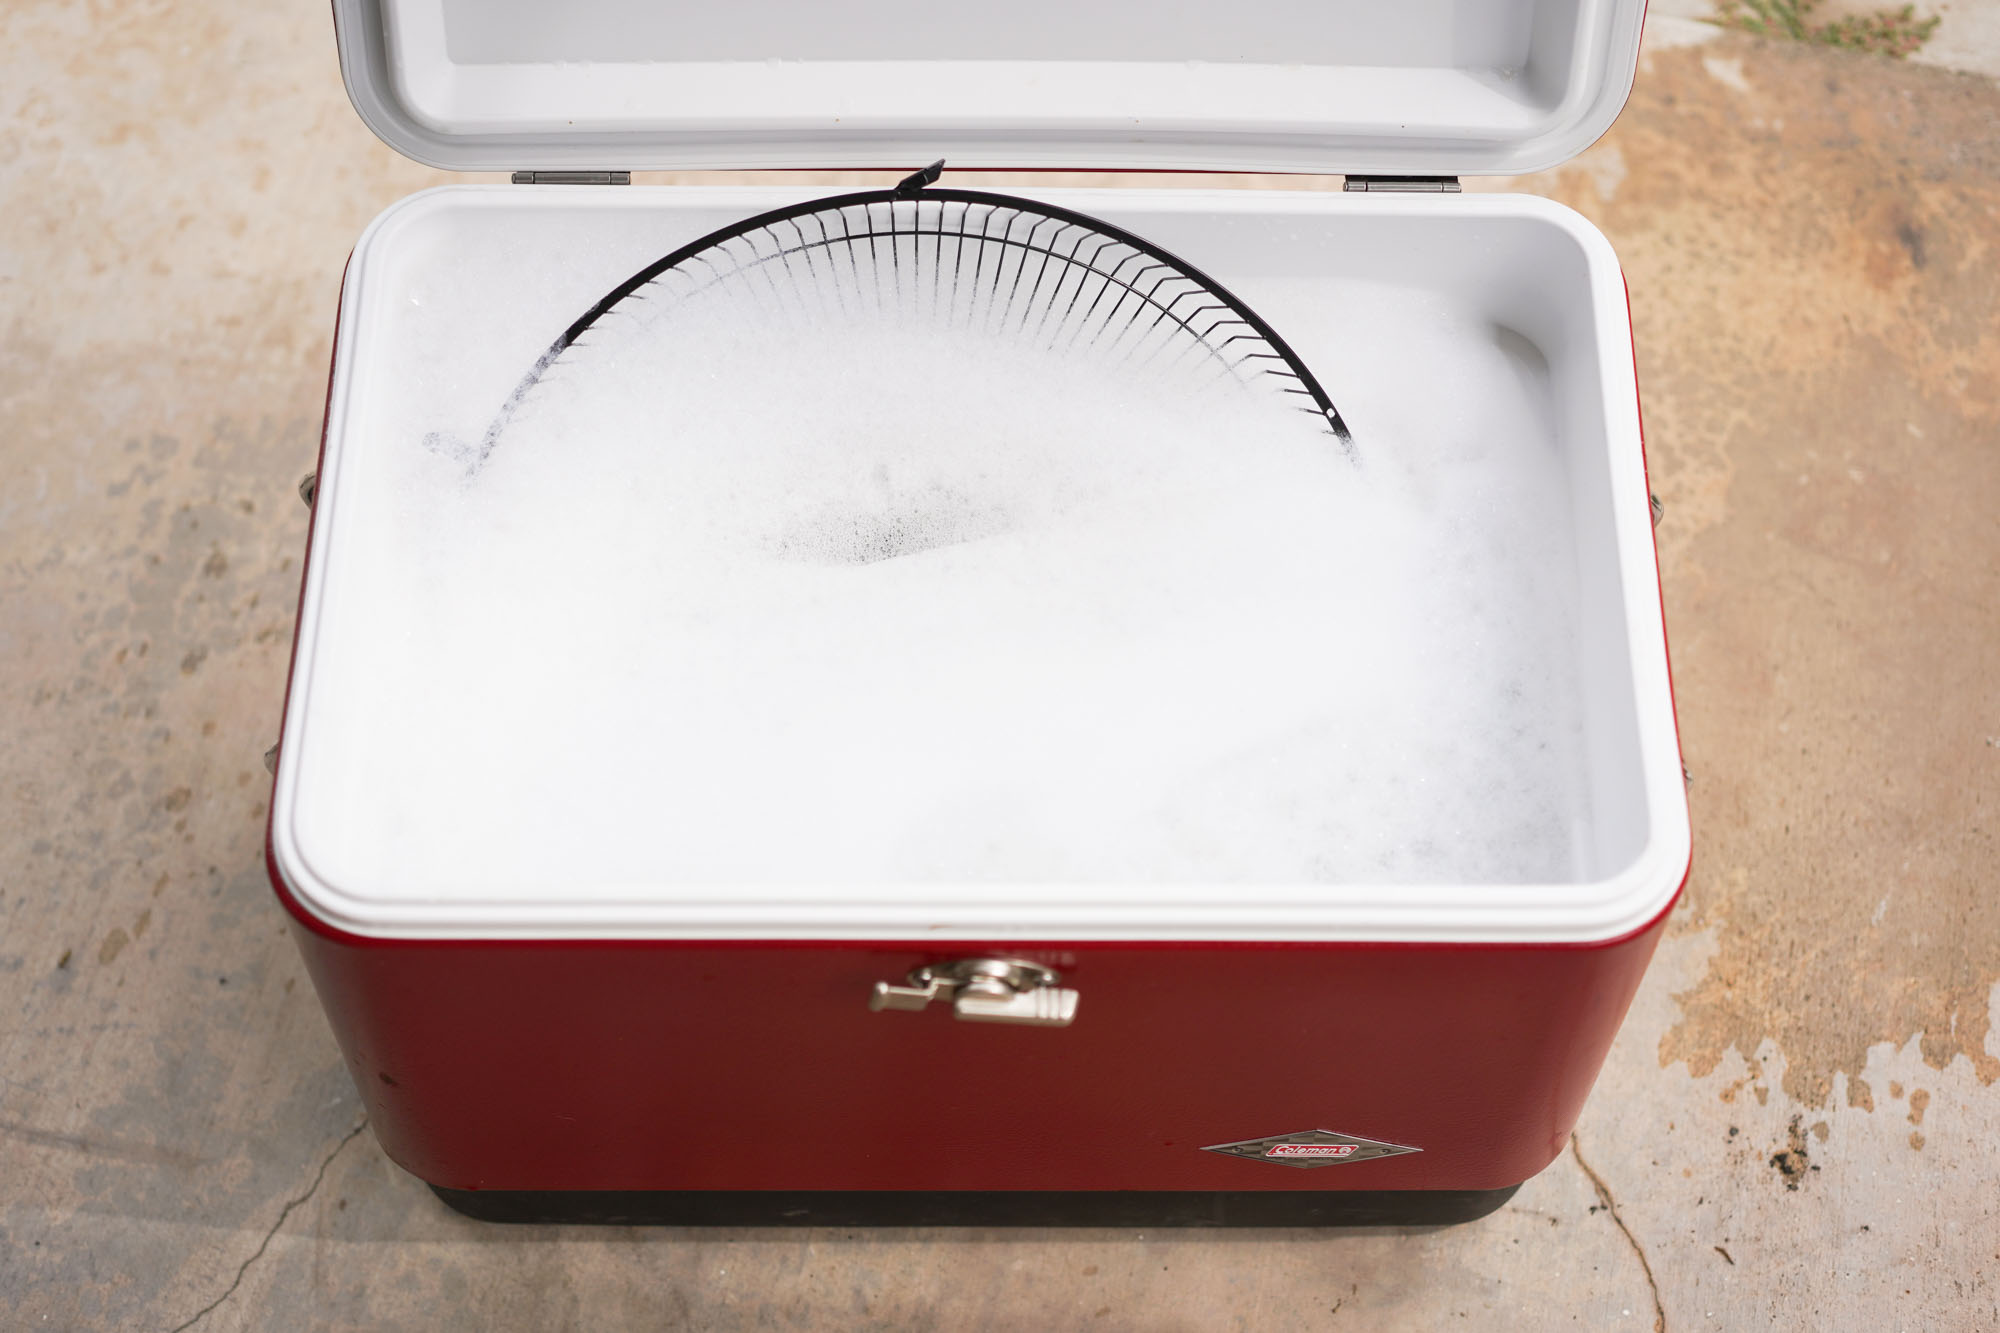 soaking fan grill in soapy water